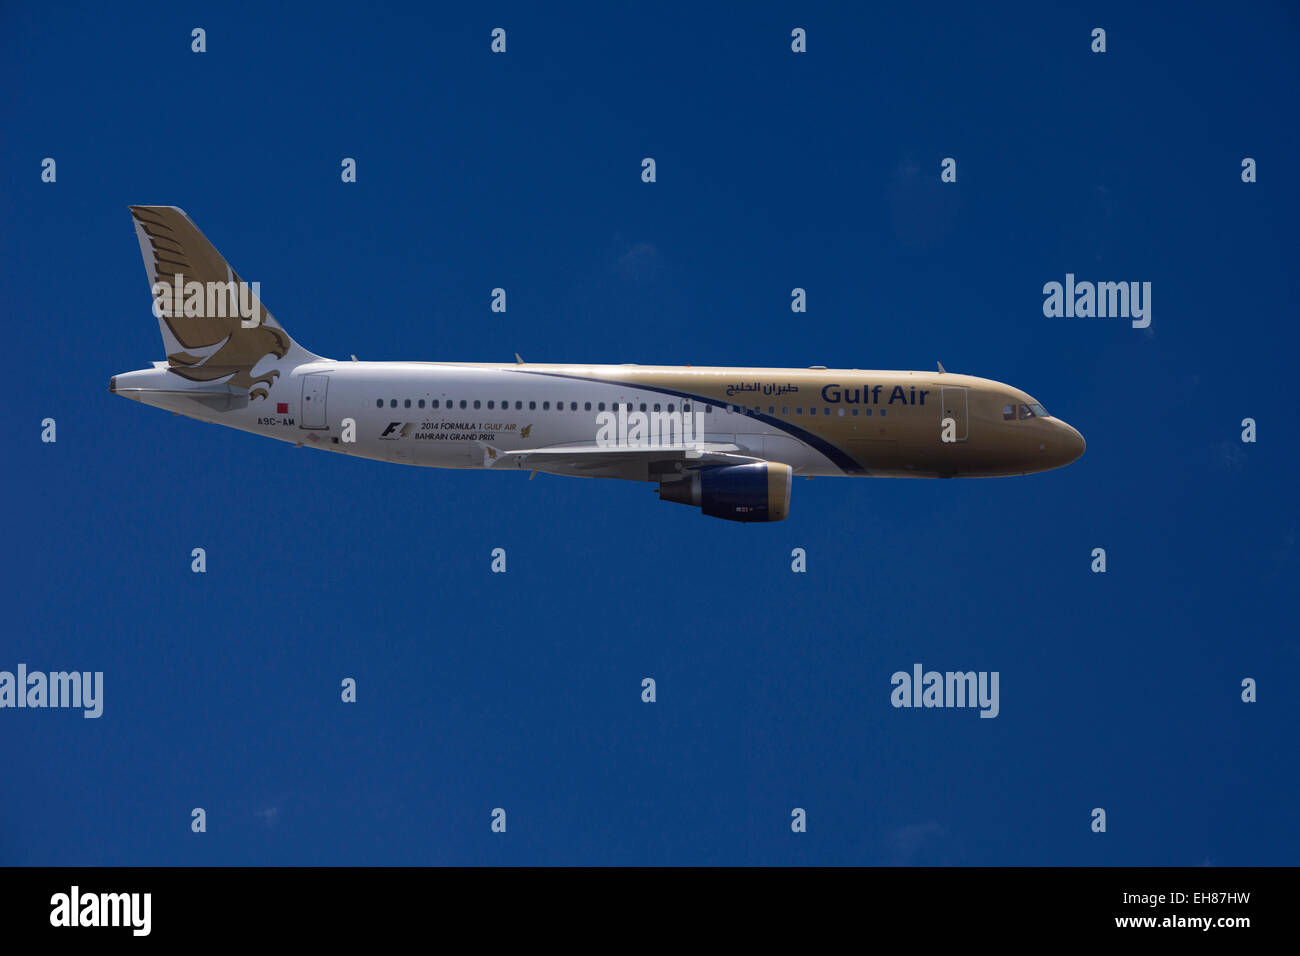 A9C-AM Gulf Air Airbus A320-214 in flight Stock Photo